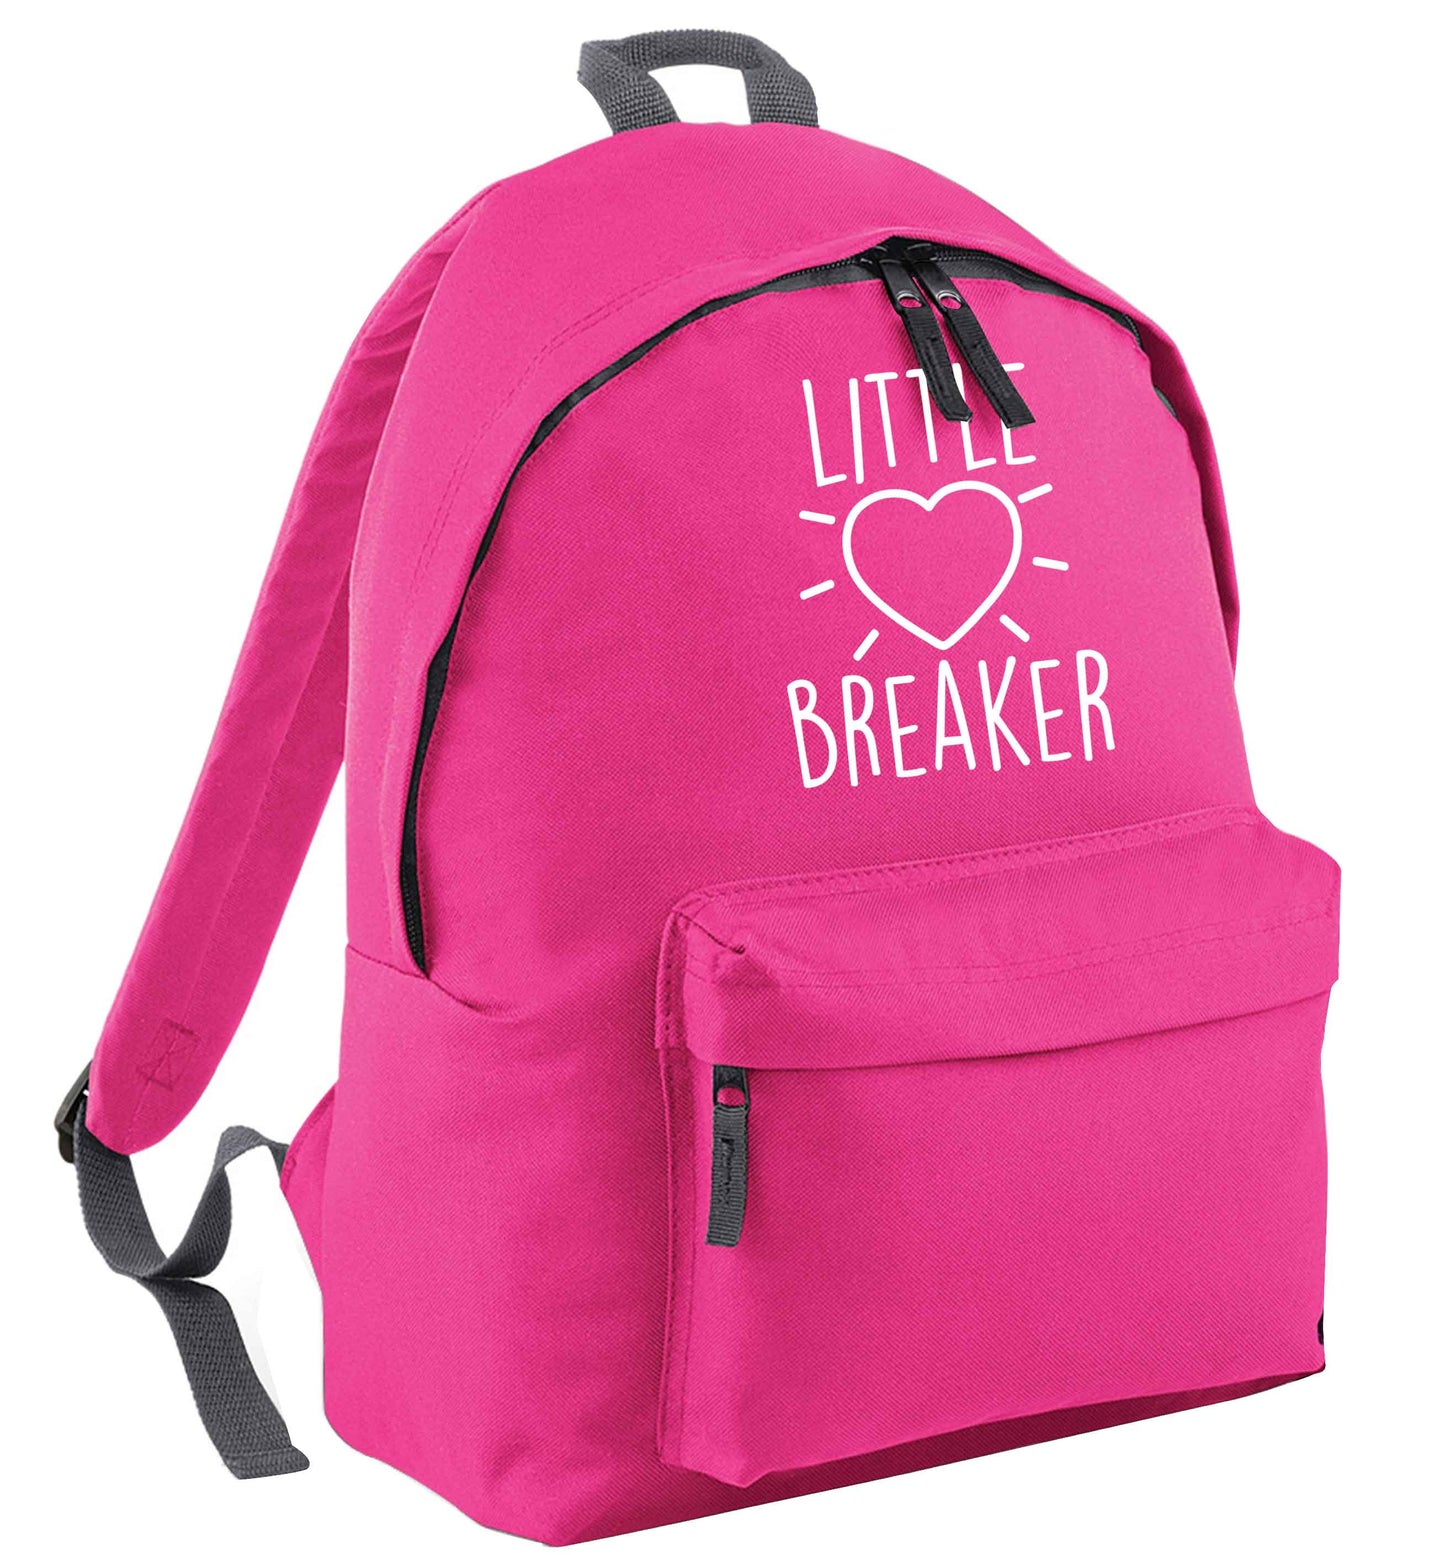 Little heartbreaker pink adults backpack